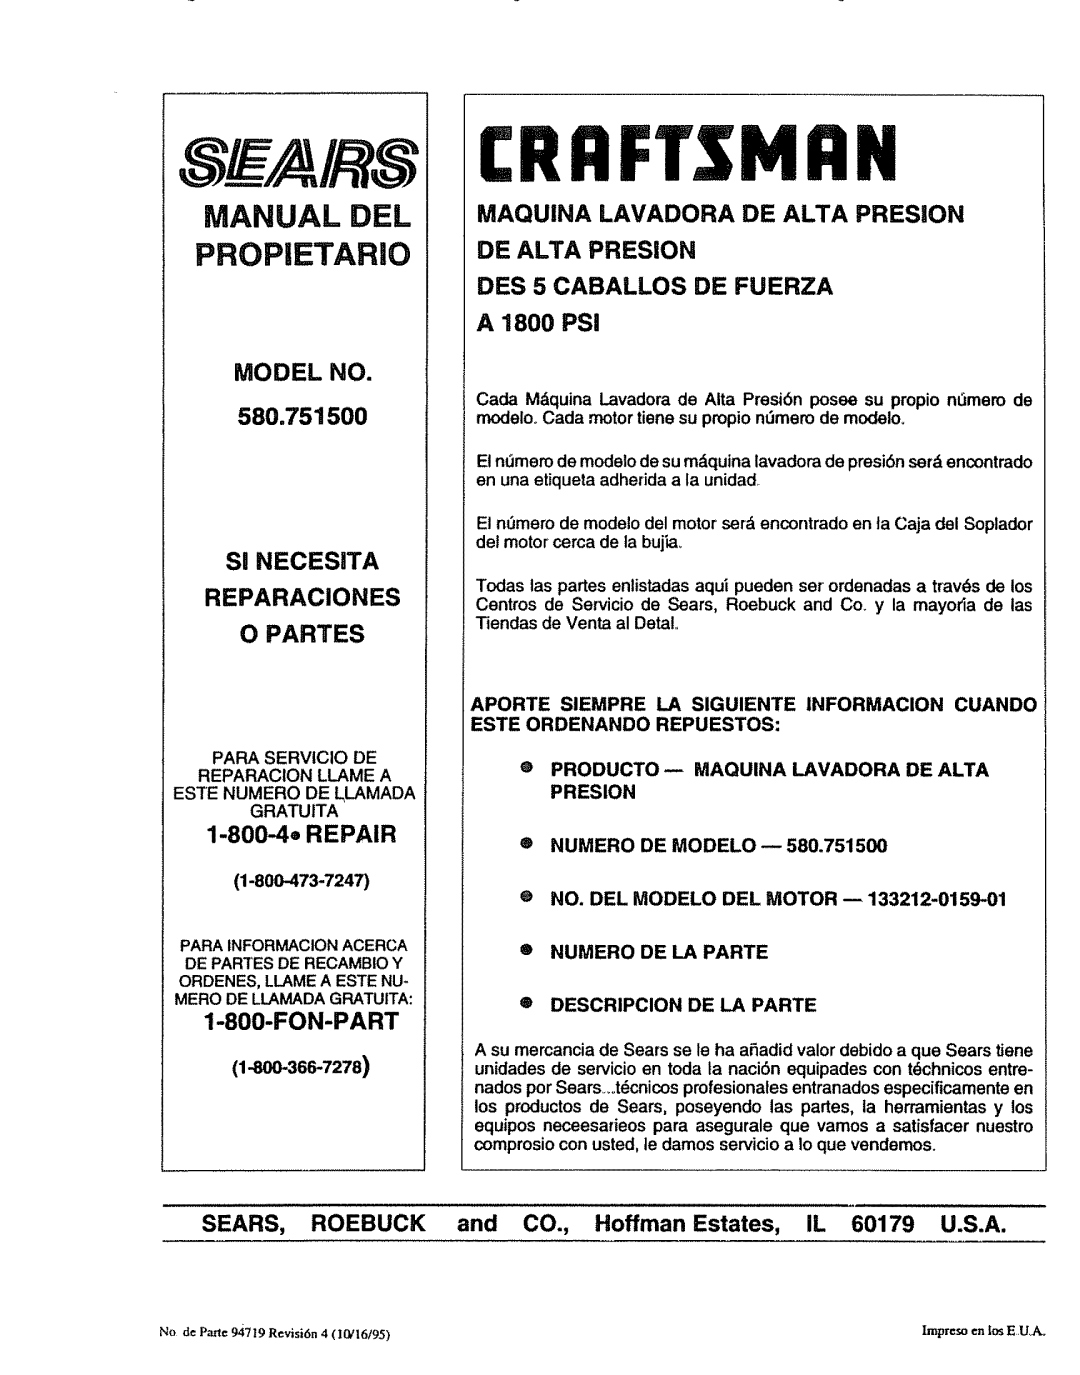 Sears manual Manual Del Propietario, MODEL NO 580.751500 SI NECESITA REPARACIONES, O Partes, 1-800-4eREPAIR, Fon-Part 